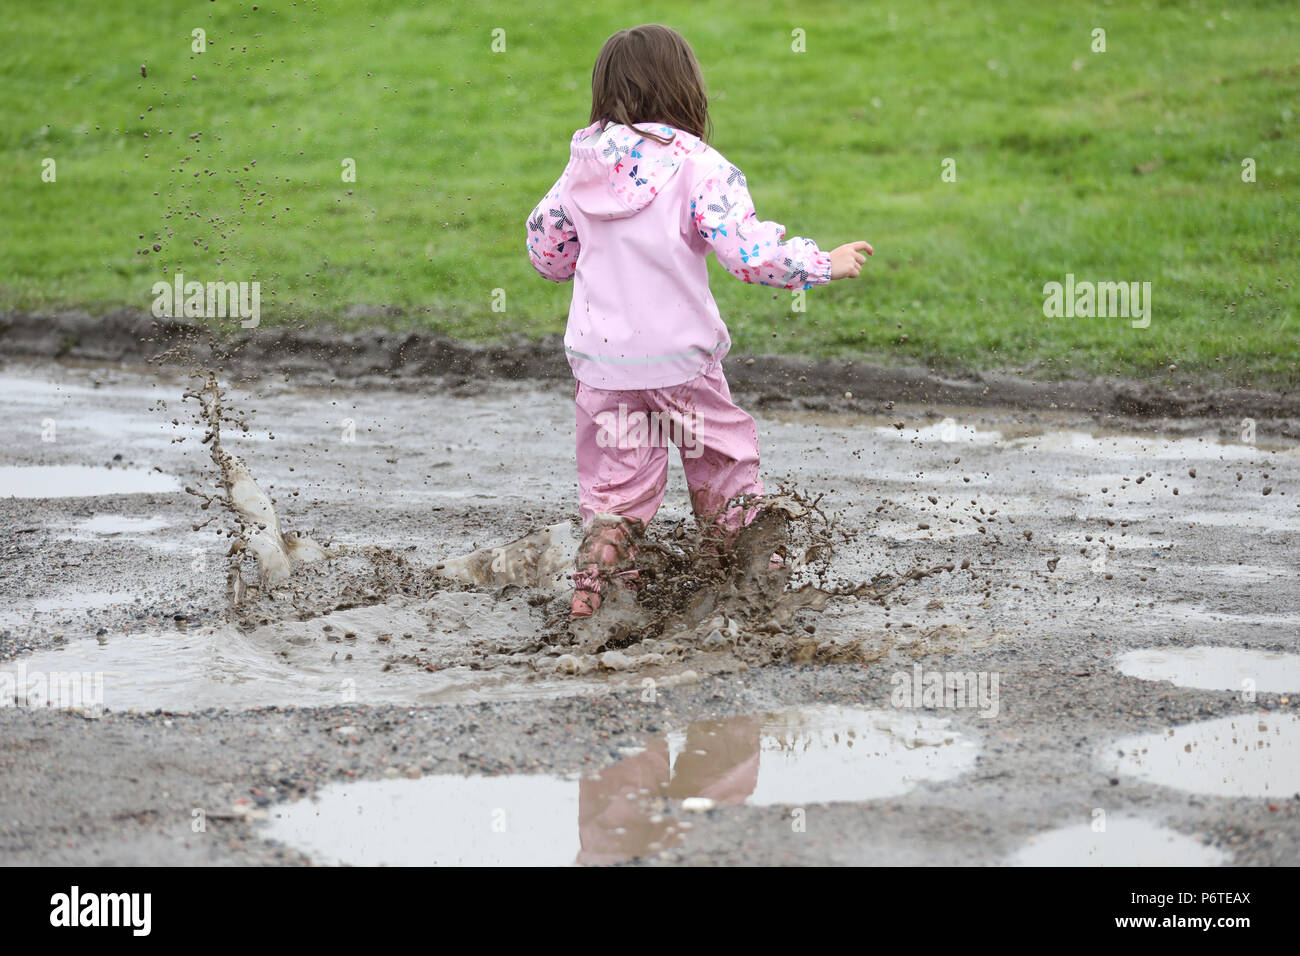 Hamburgo, niño en ropa de lluvia que se ejecutan a través de un charco Foto de stock